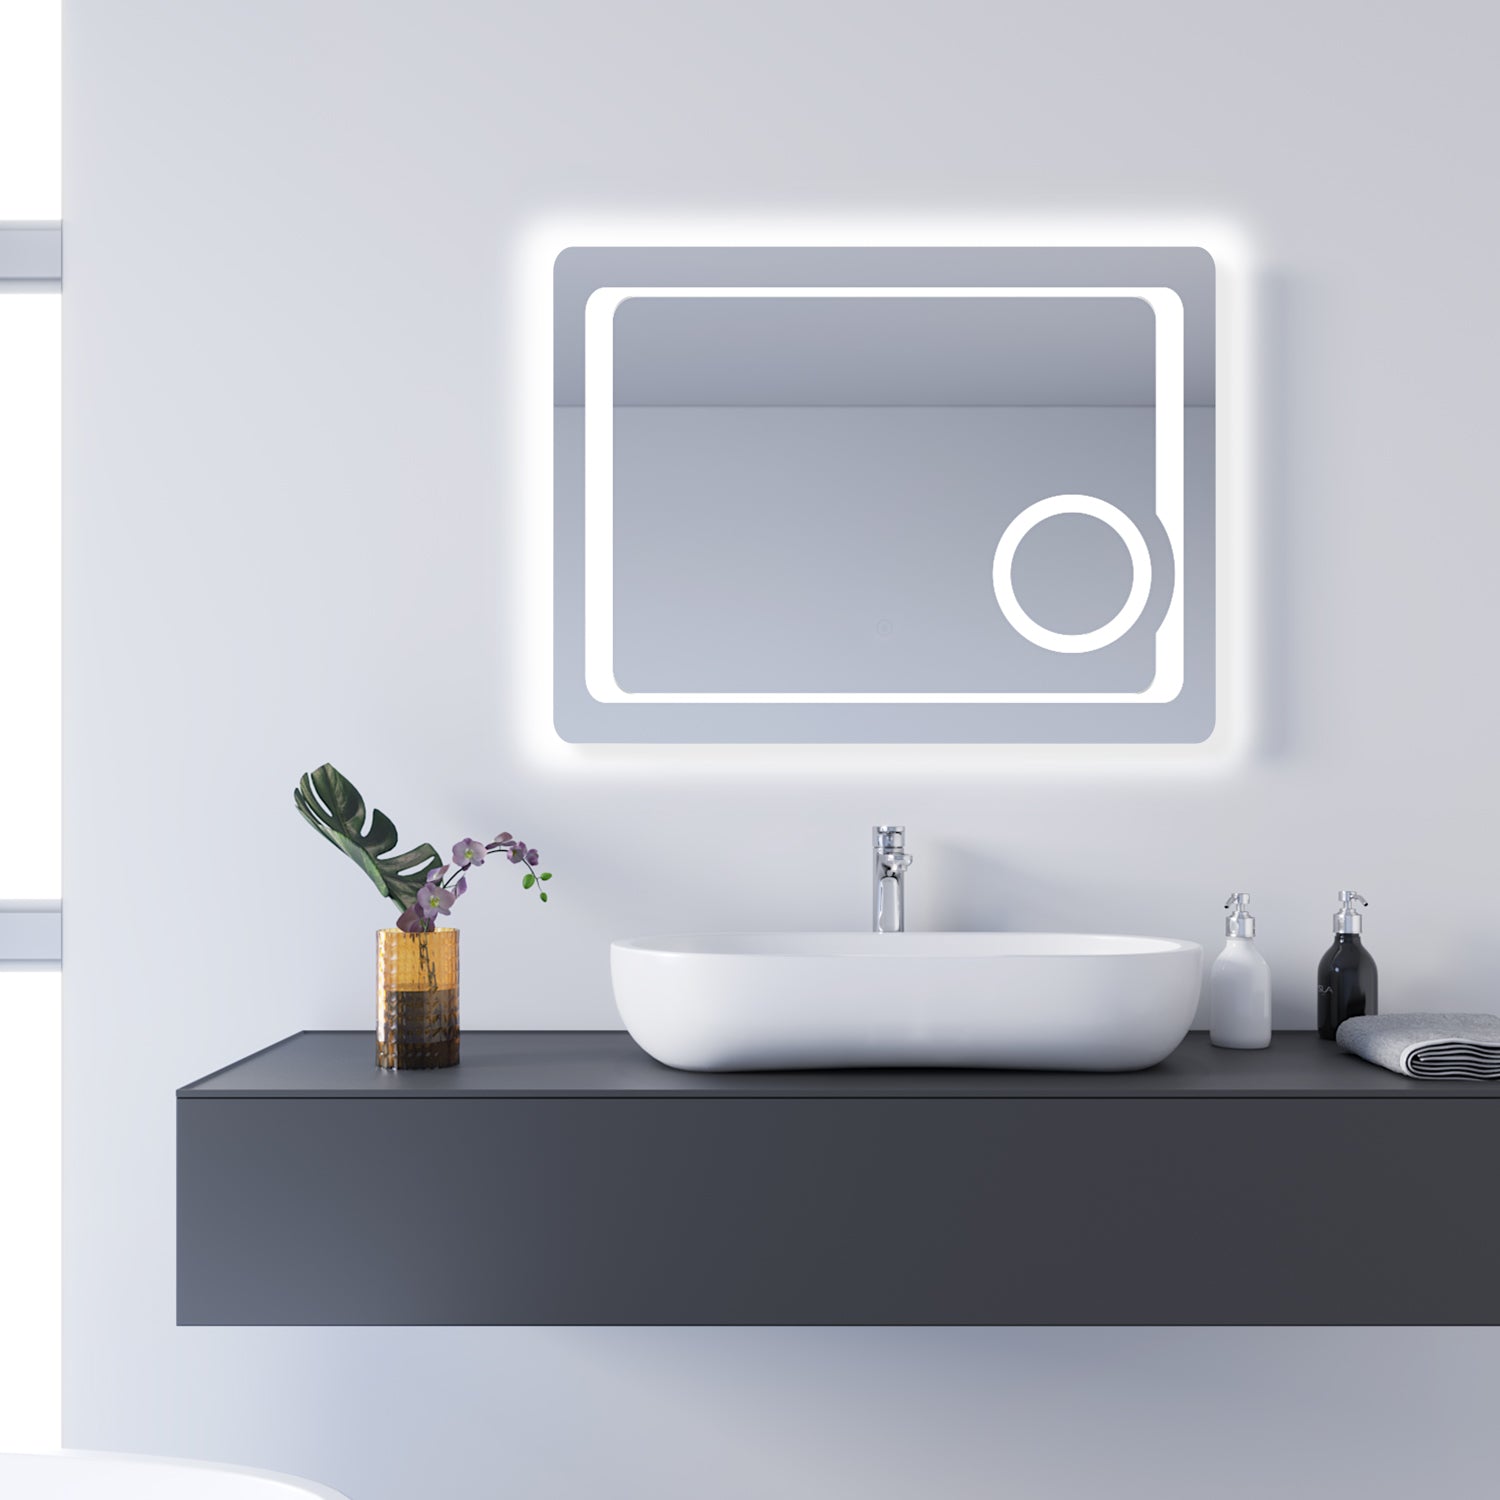 SONNI Badezimmer LED Spiegel Badspiegel mit Beleuchtung Kosmetikspiegel Touchschalter 80x60cm GTBM009